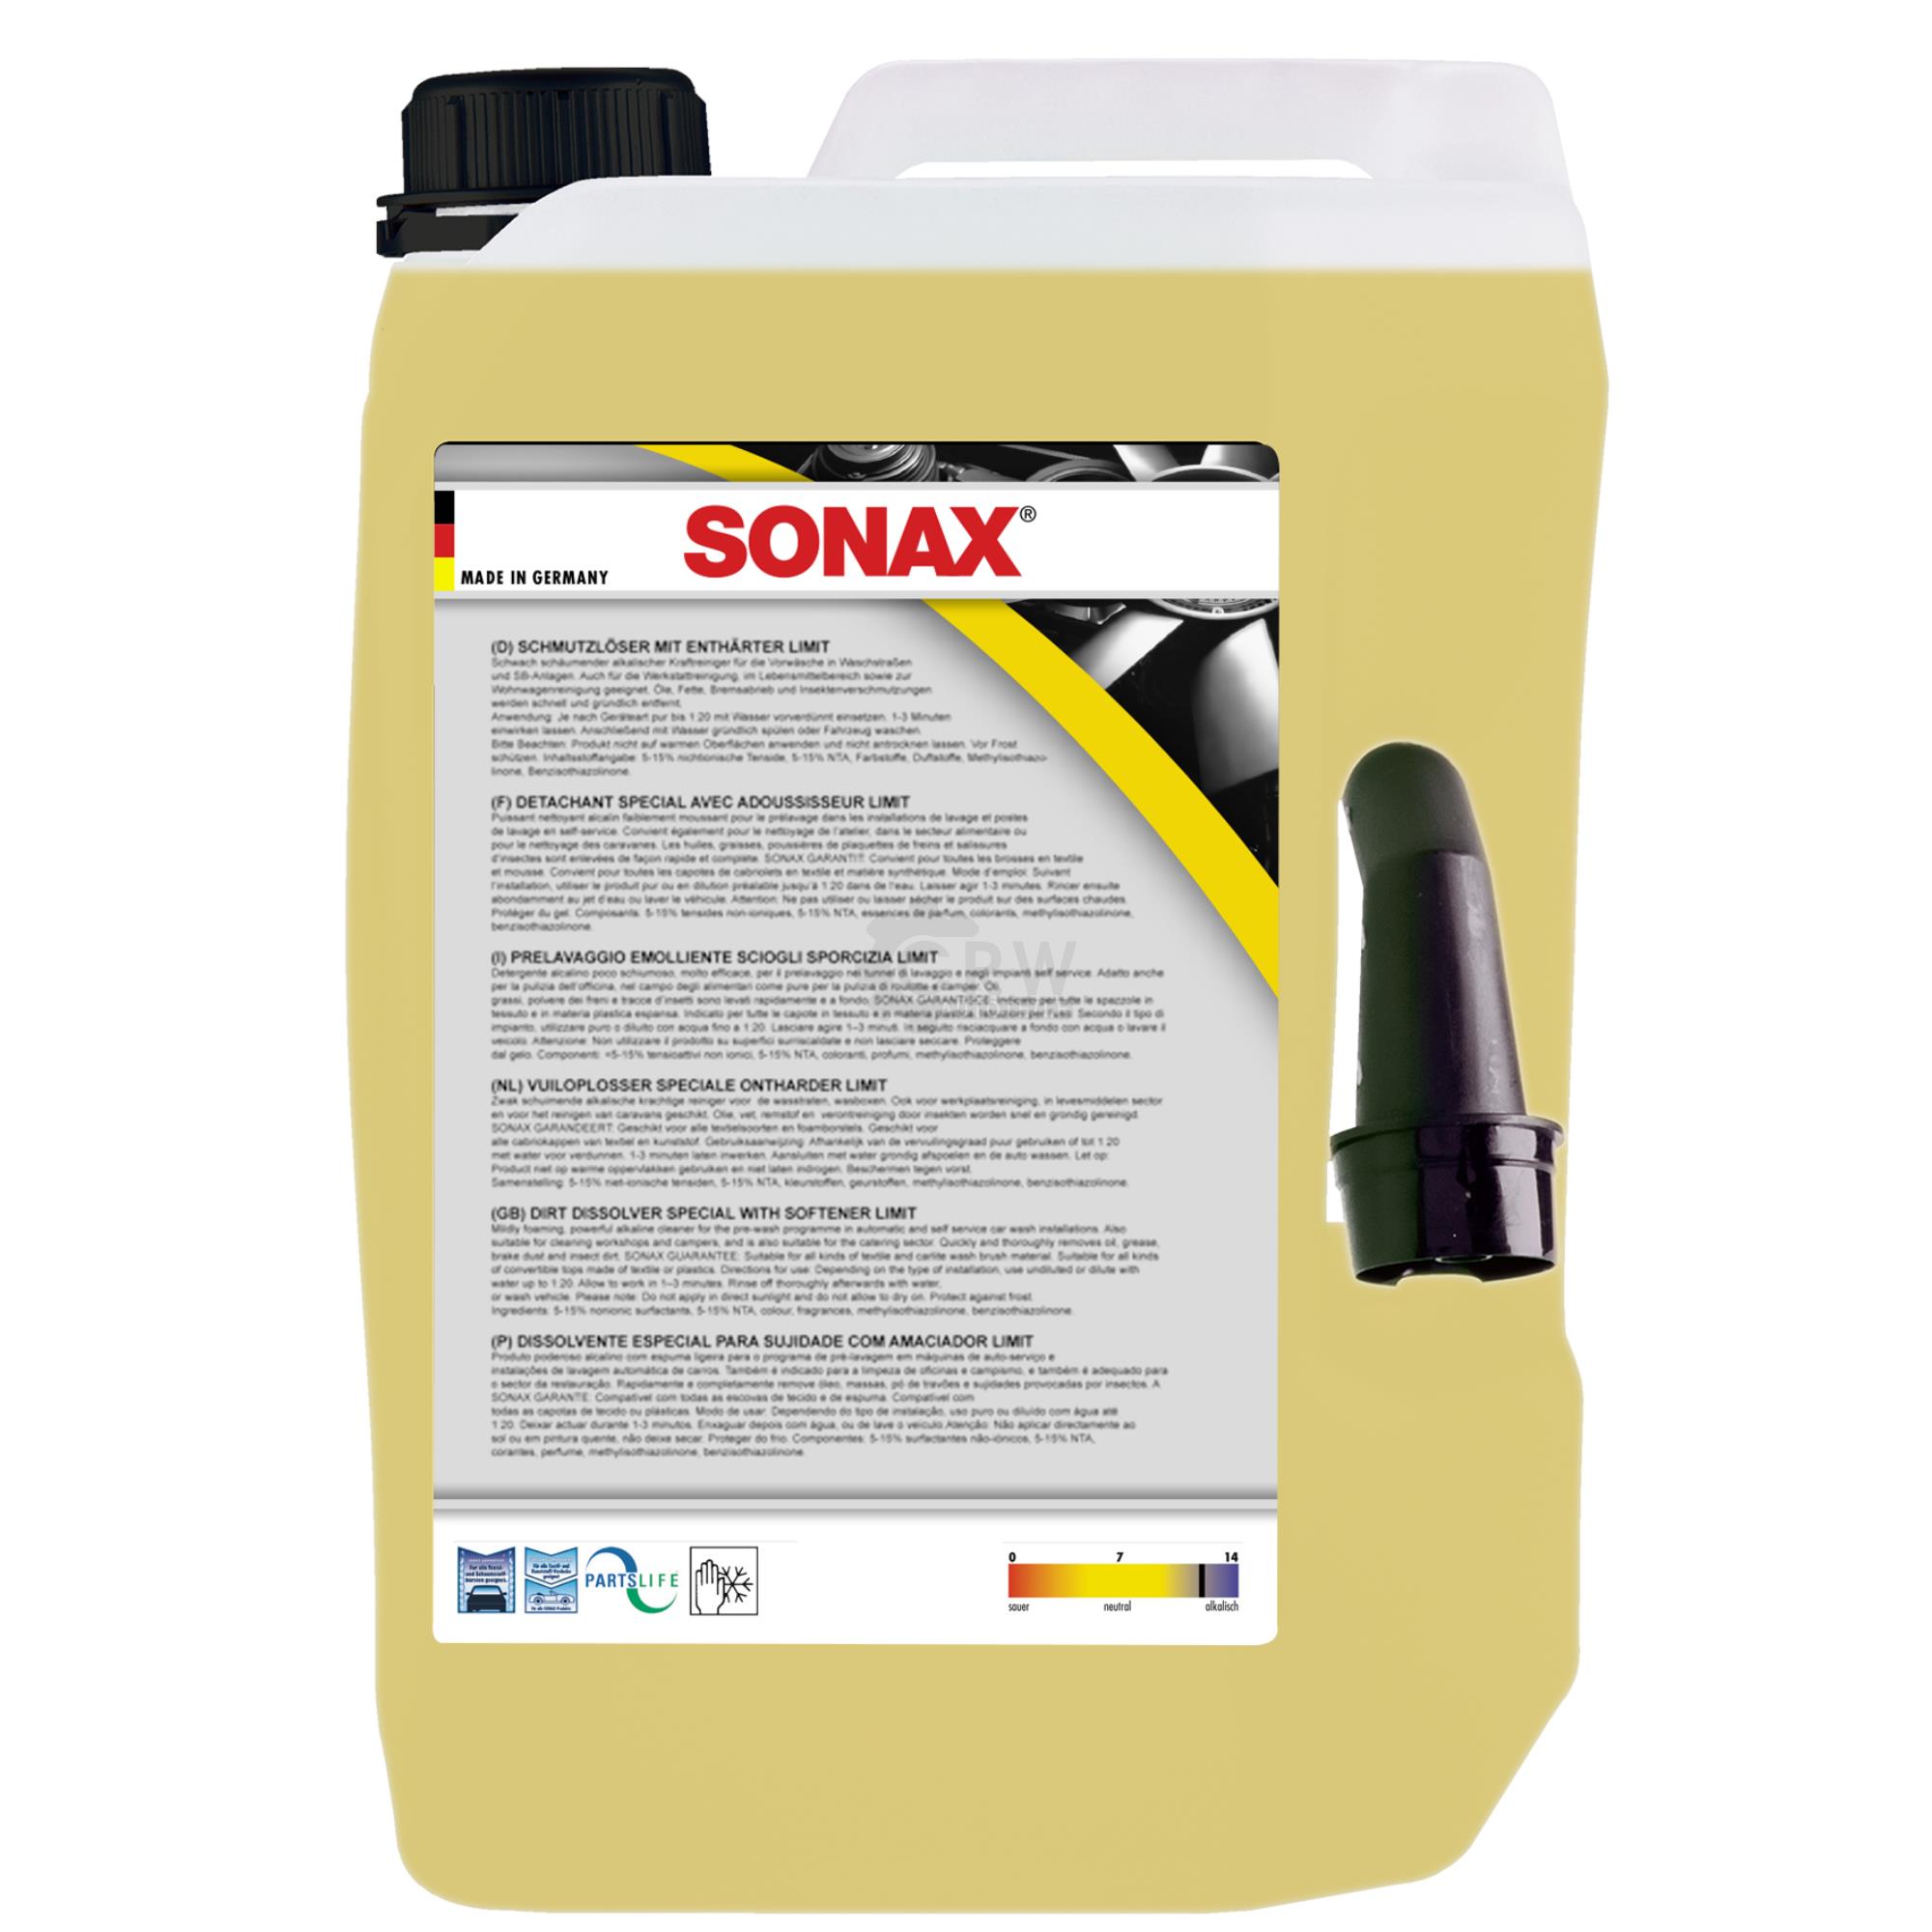 SONAX 06055050 SchmutzLöser/WerkstattReiniger Reinigerkonzentrat 5 L